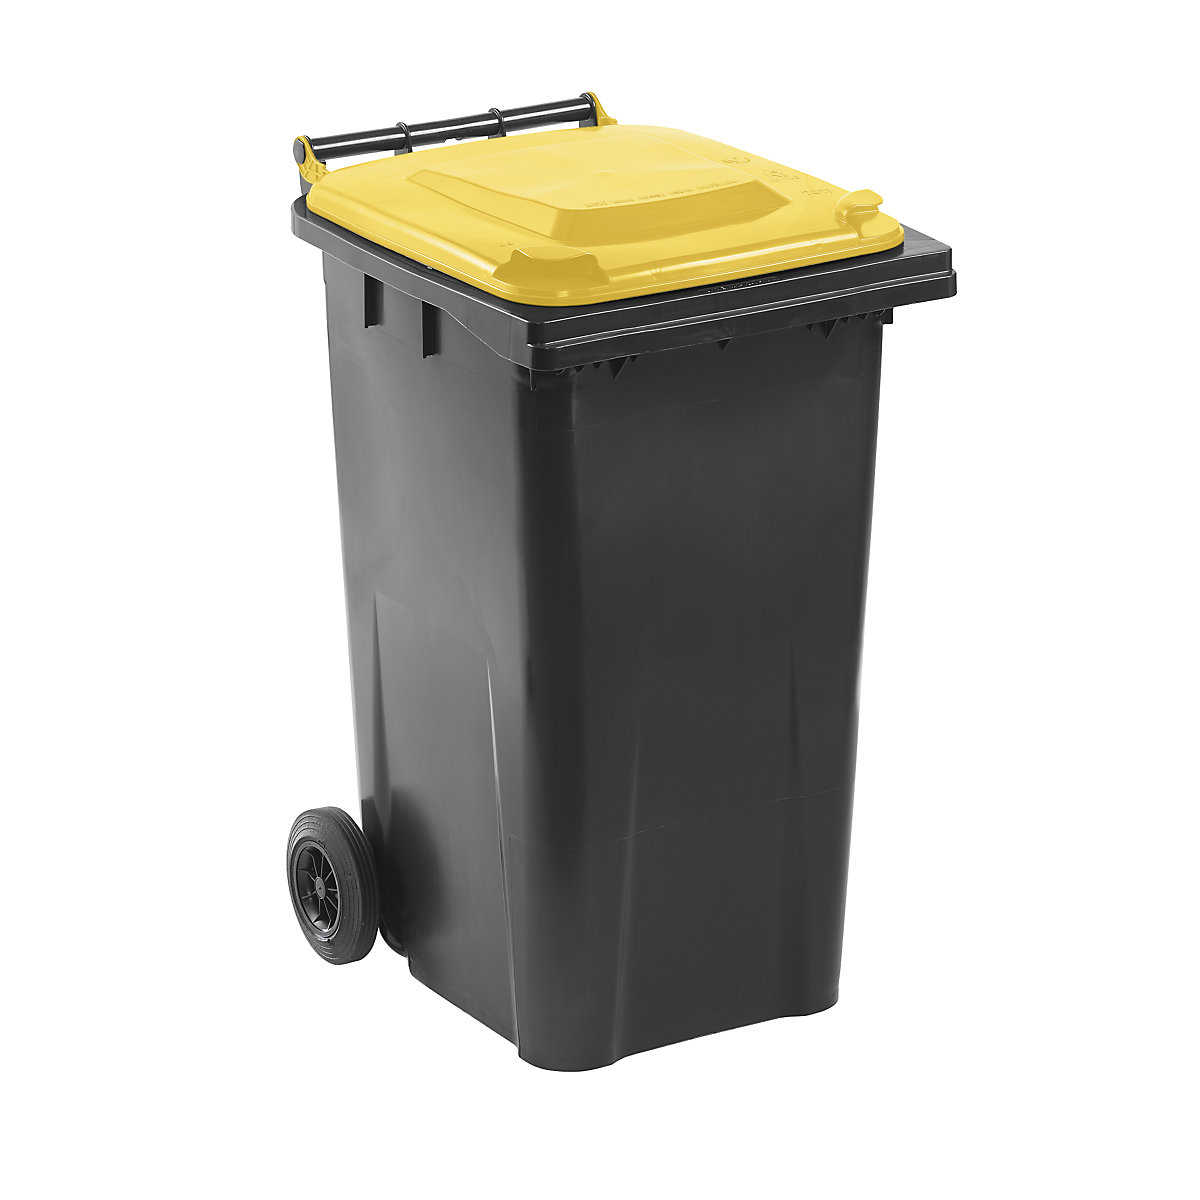 Waste bin to DIN EN 840